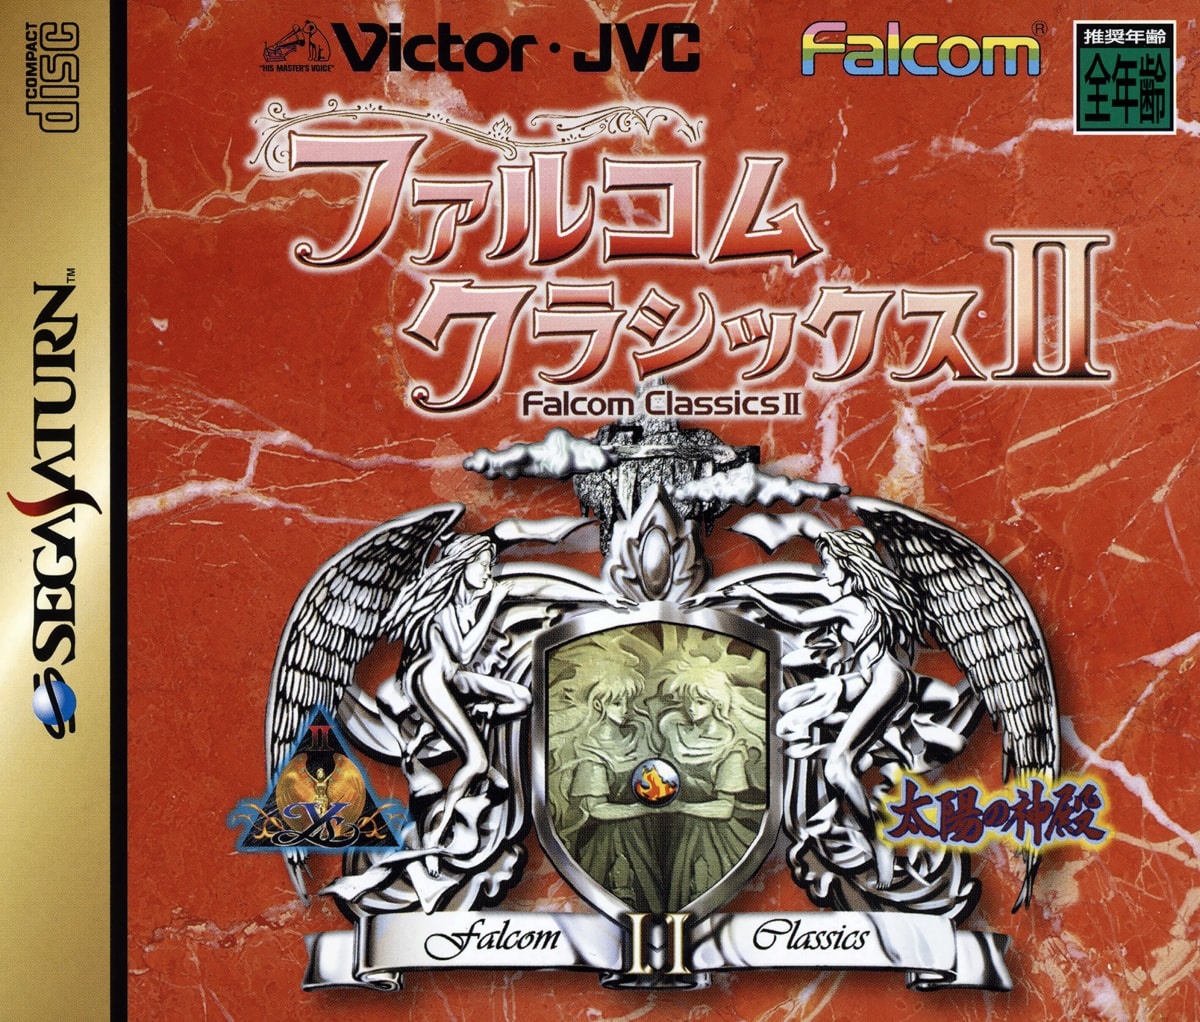 Capa do jogo Falcom Classics II